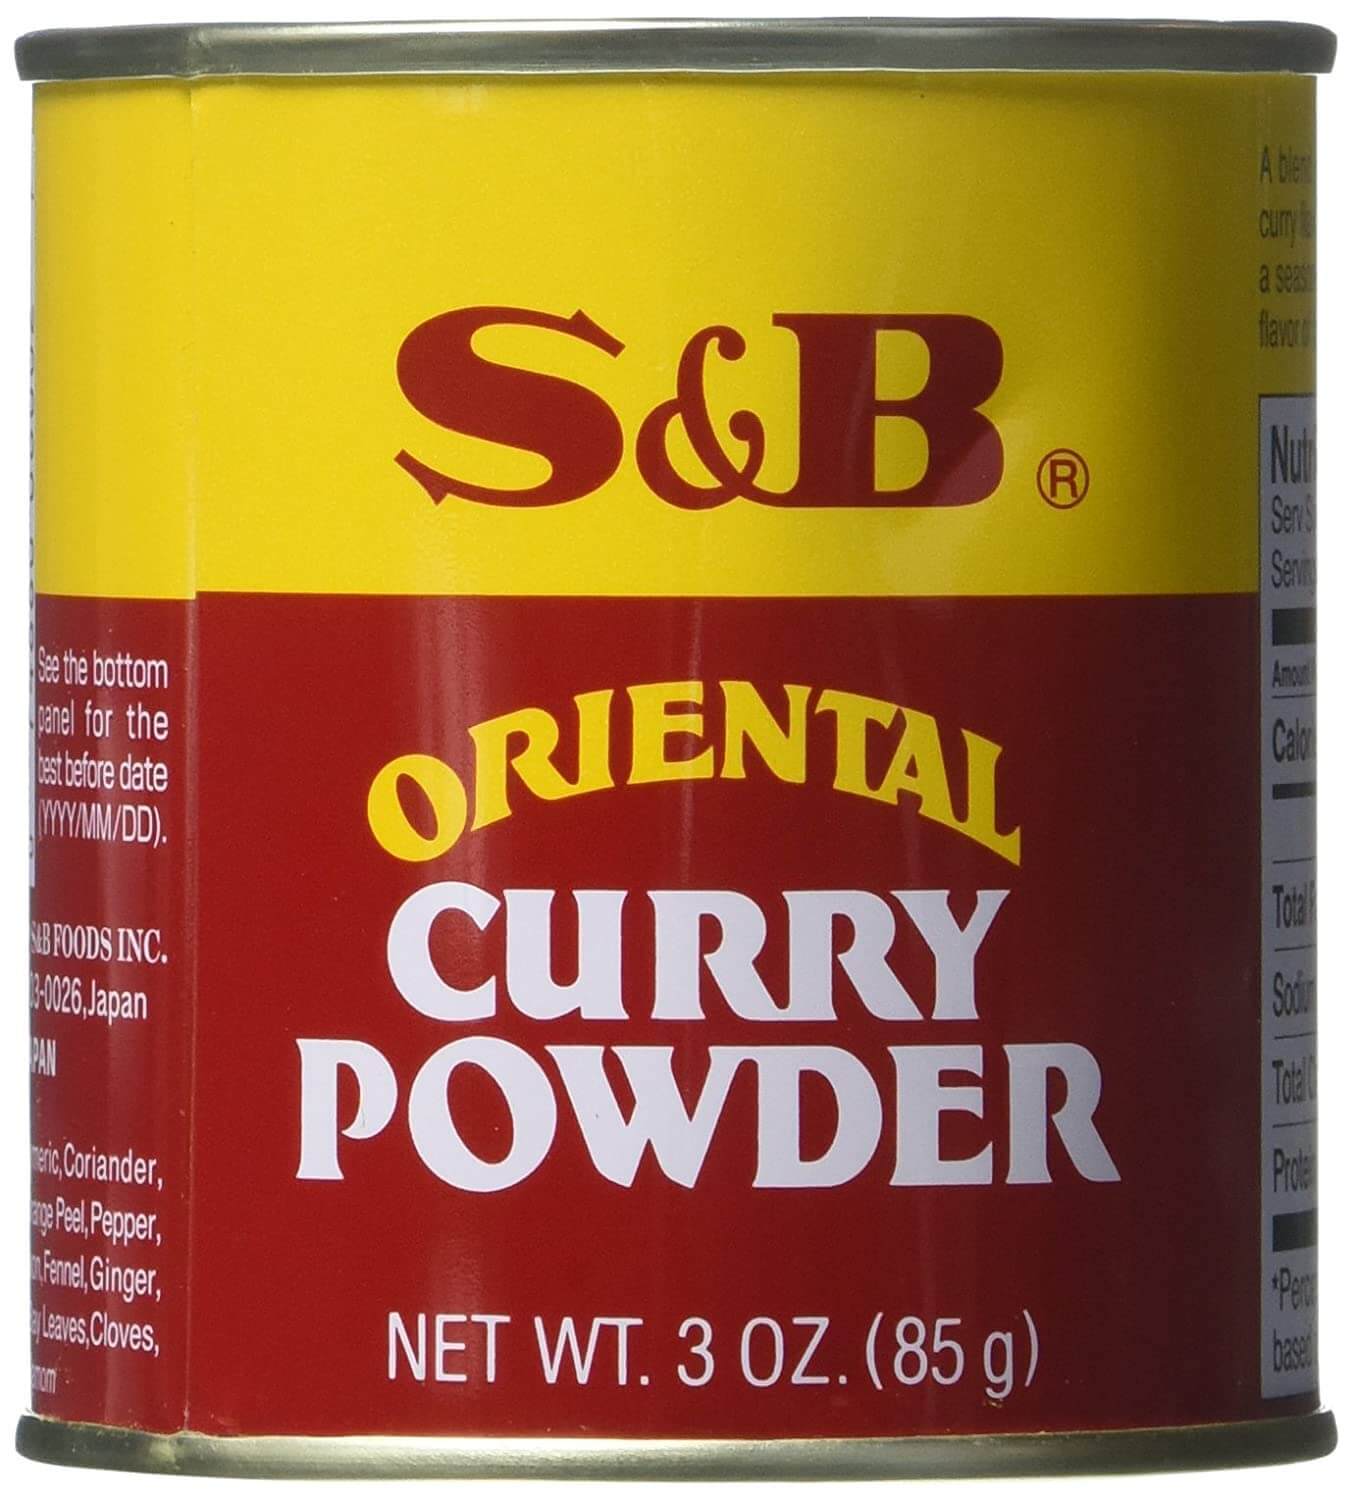 S&B Oriental Curry Powder - 85g/3oz